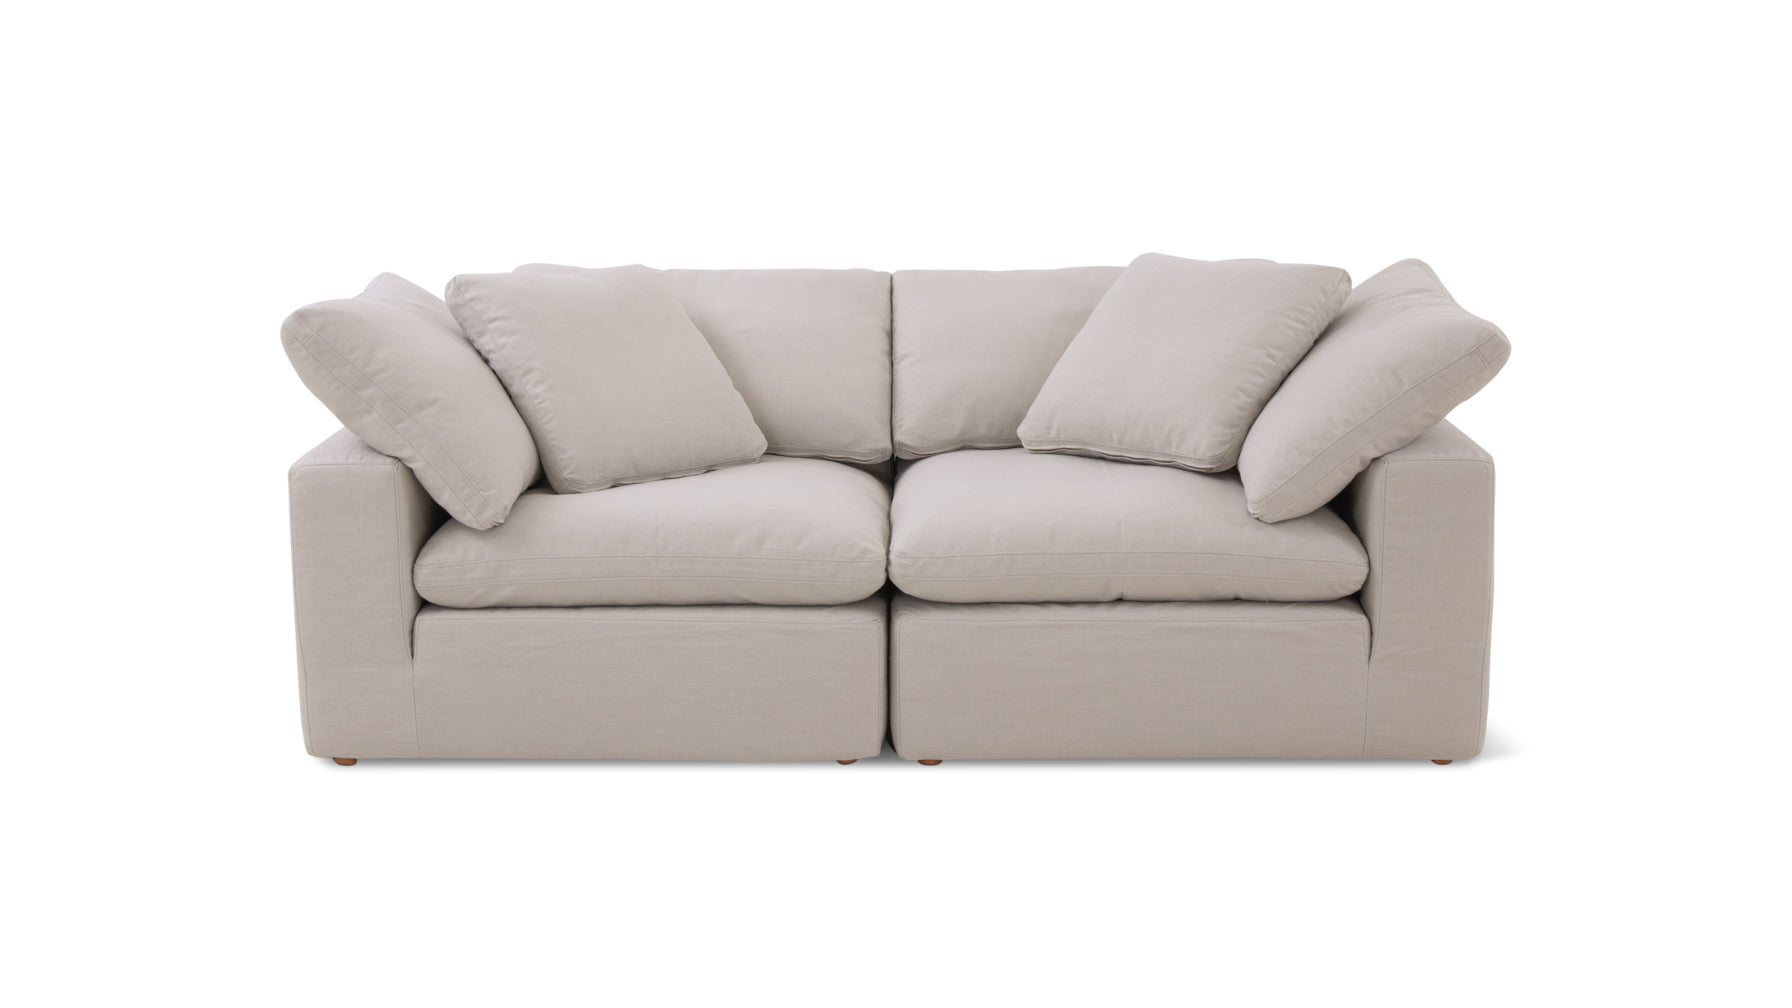 Movie Night™ 2-Piece Modular Sofa, Large, Clay - Image 1